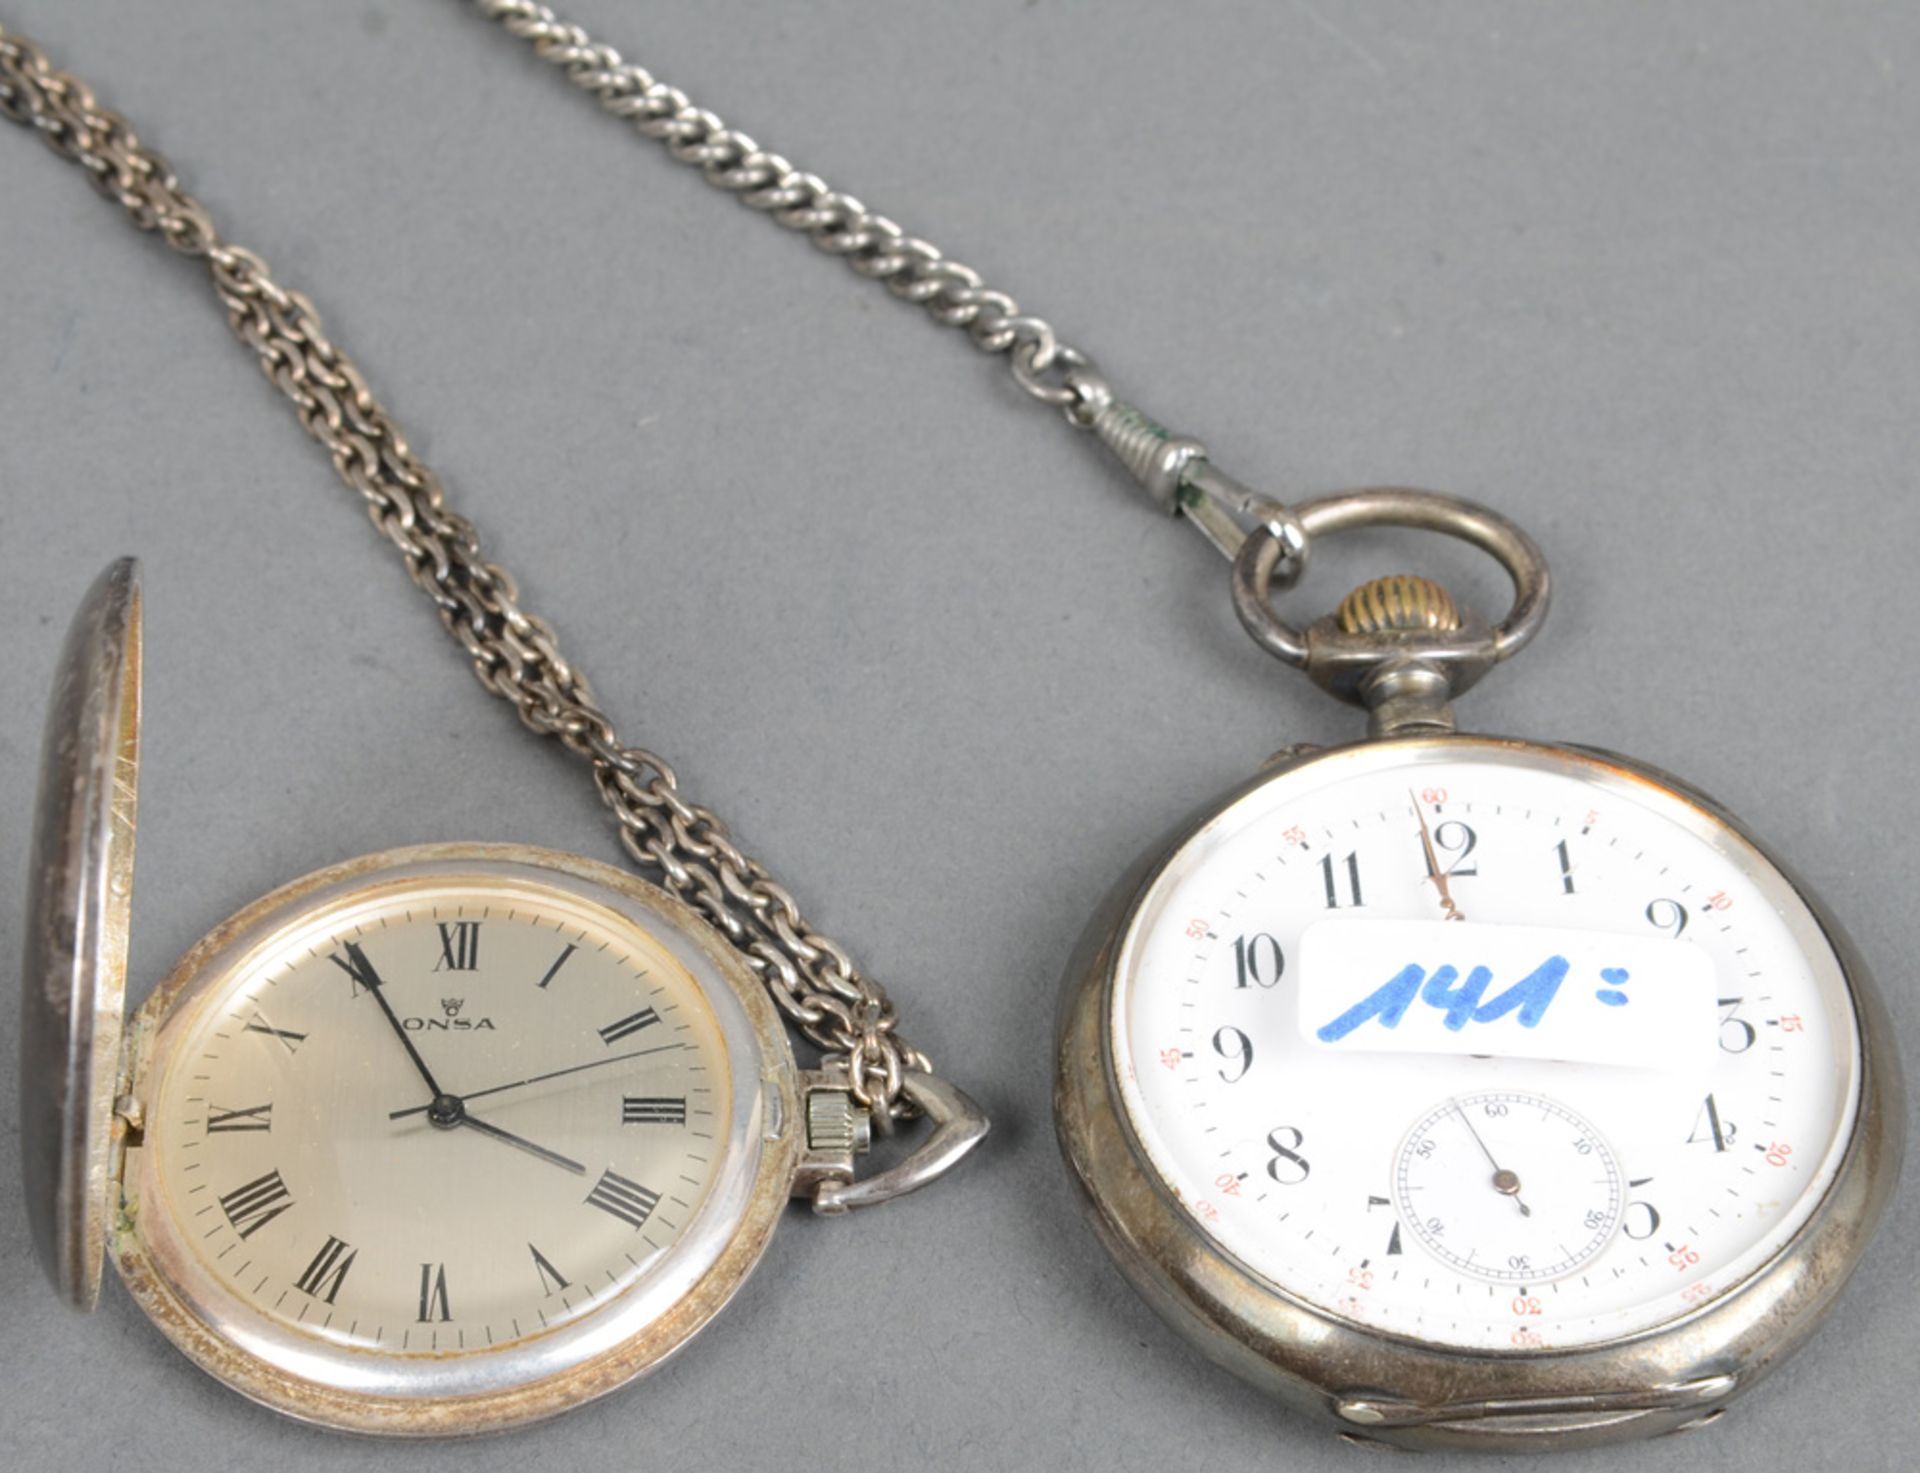 Zwei Taschenuhren, Marke „Onsa“. Schweiz 20. Jh. Eine 900er Silber, die andere versilbert, mit Krone